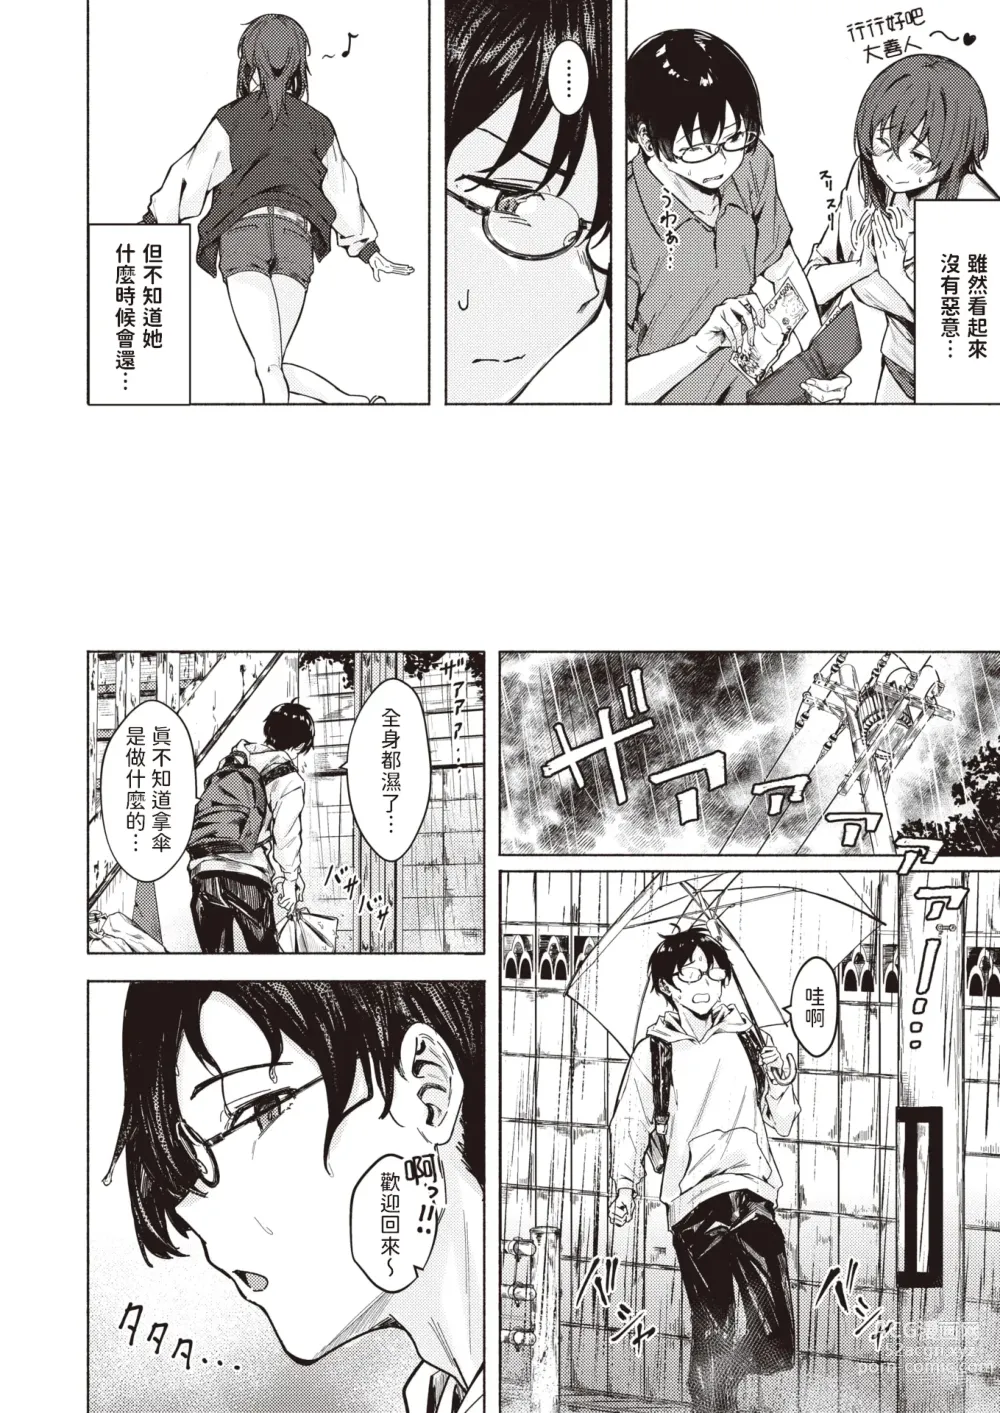 Page 4 of manga Chotto Kashite